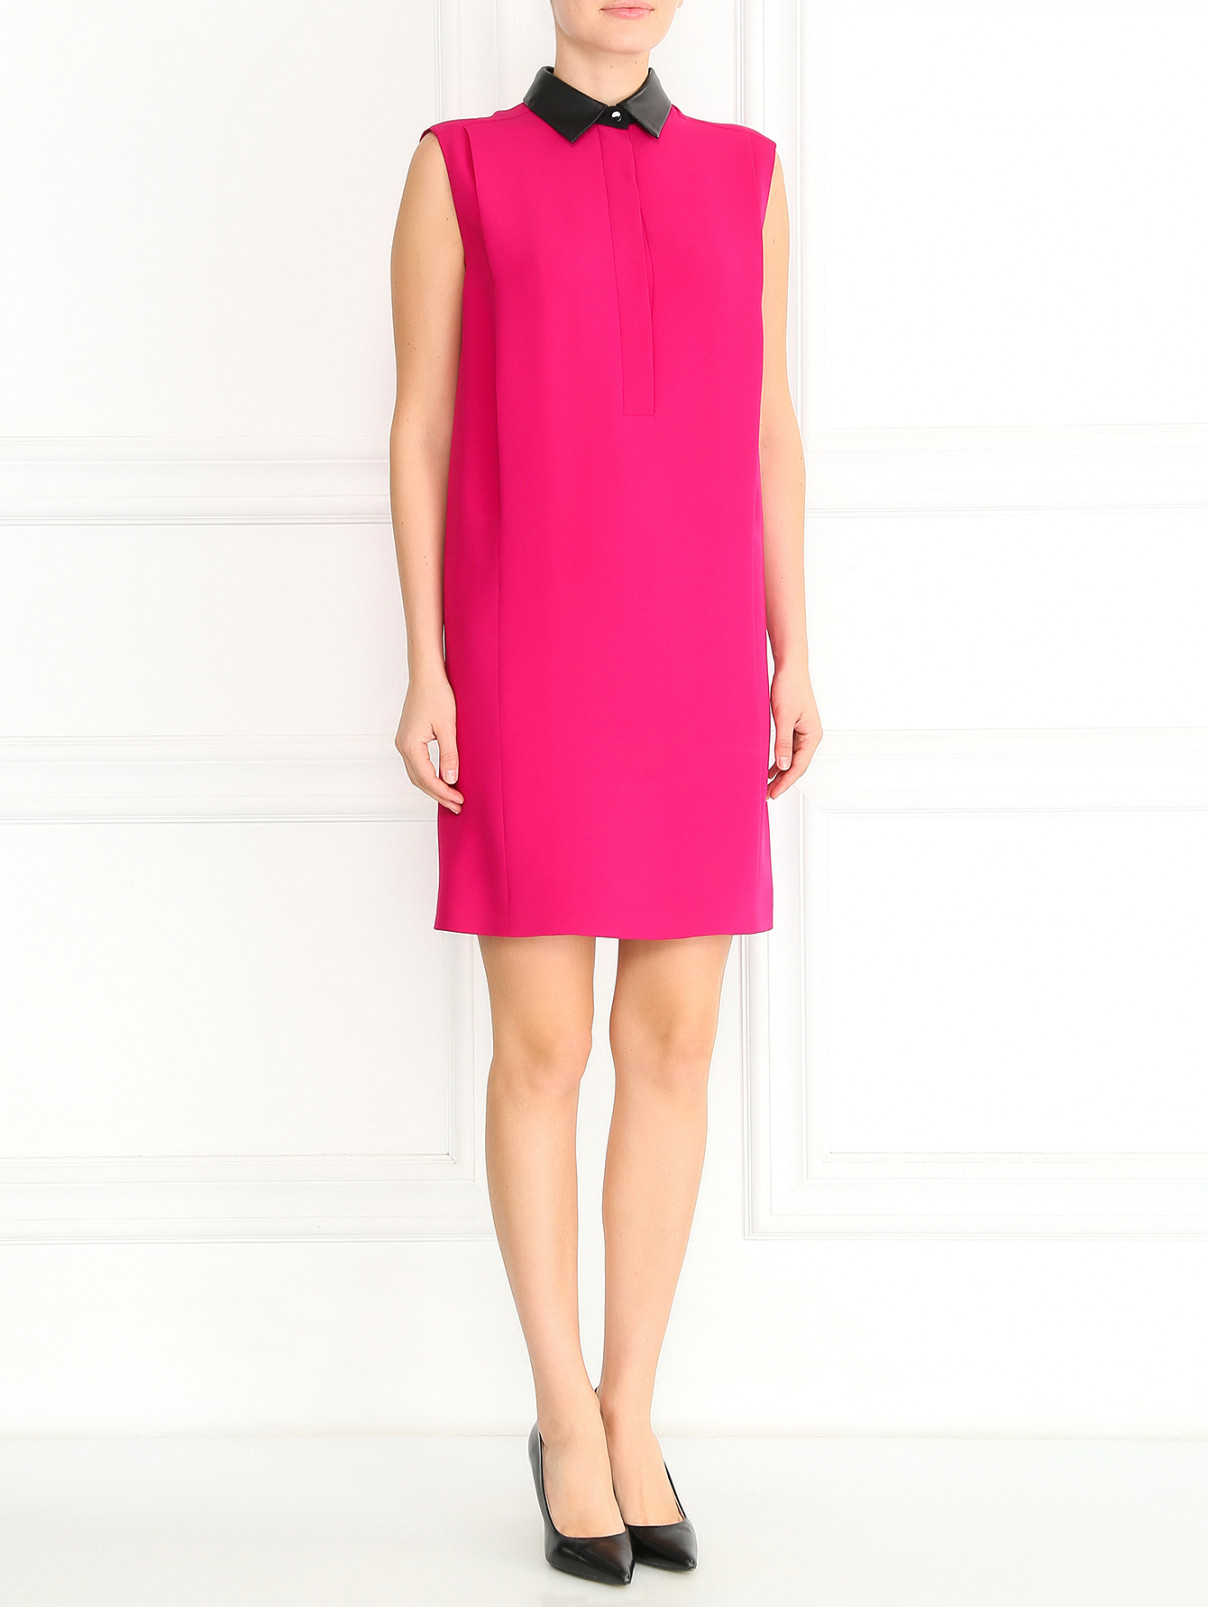 Шелковое платье-мини со съемным кожаным воротником Gucci  –  Модель Общий вид  – Цвет:  Розовый